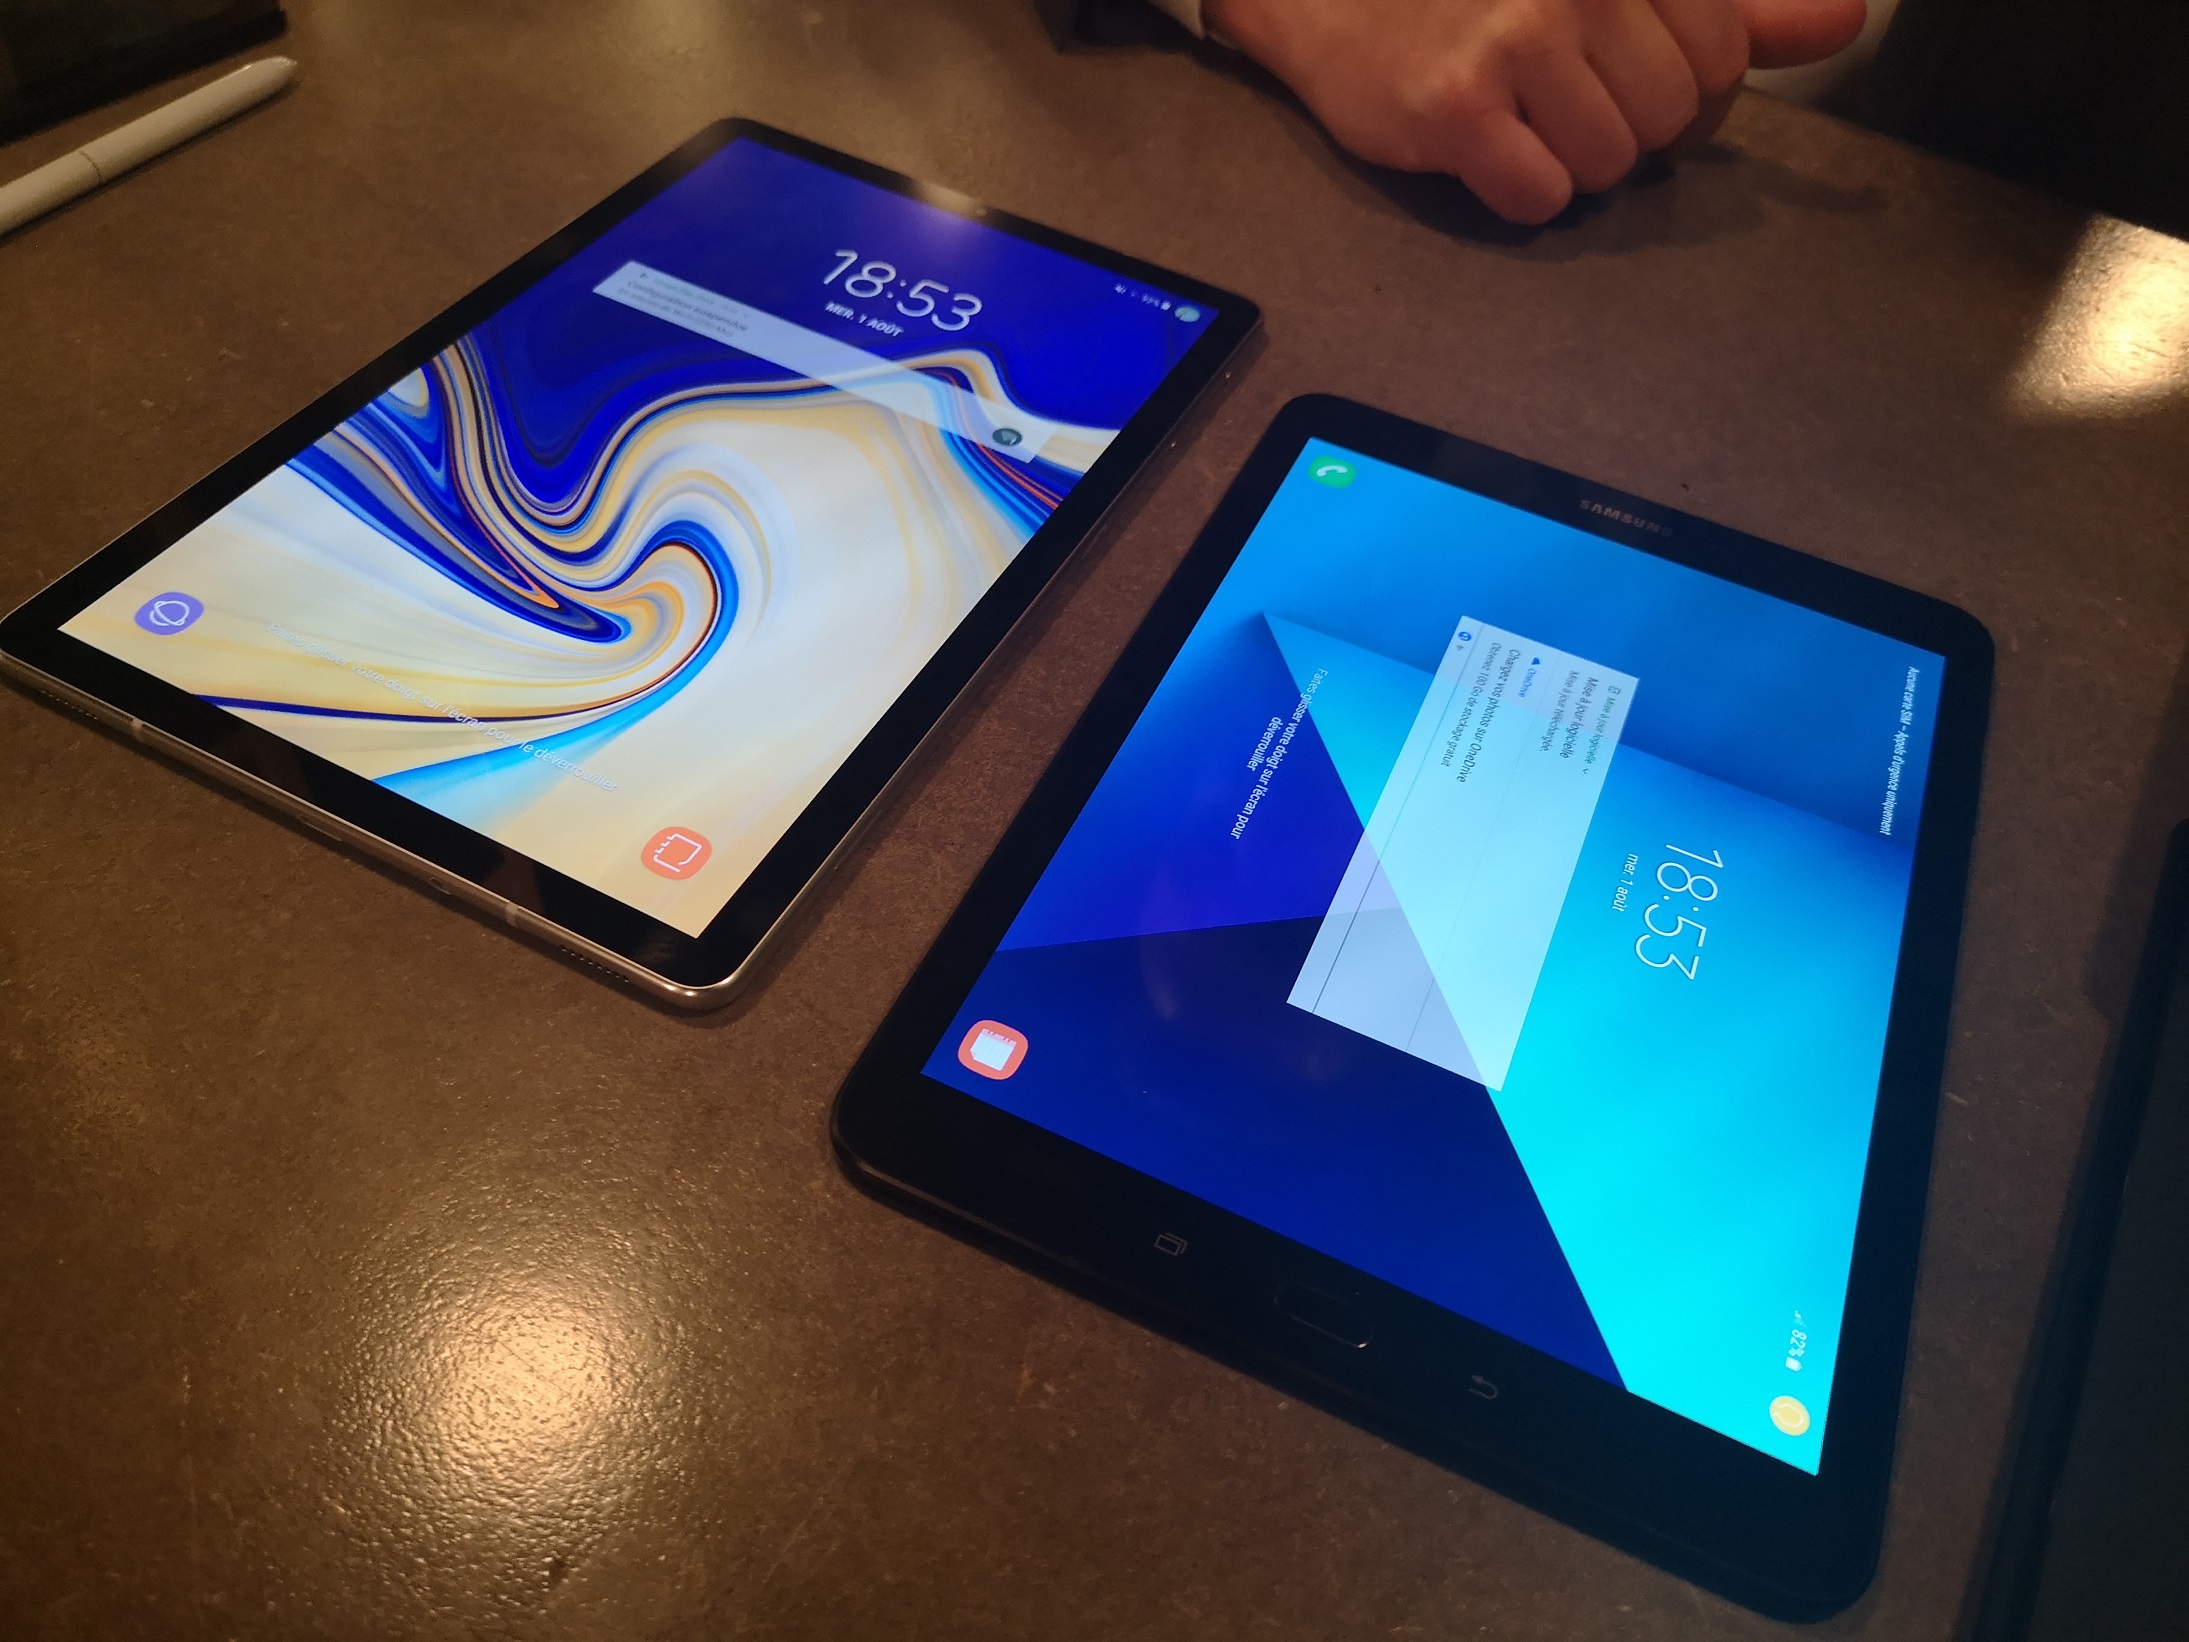 Samsung Galaxy Tab S4 vs Samsung Galaxy Tab S3